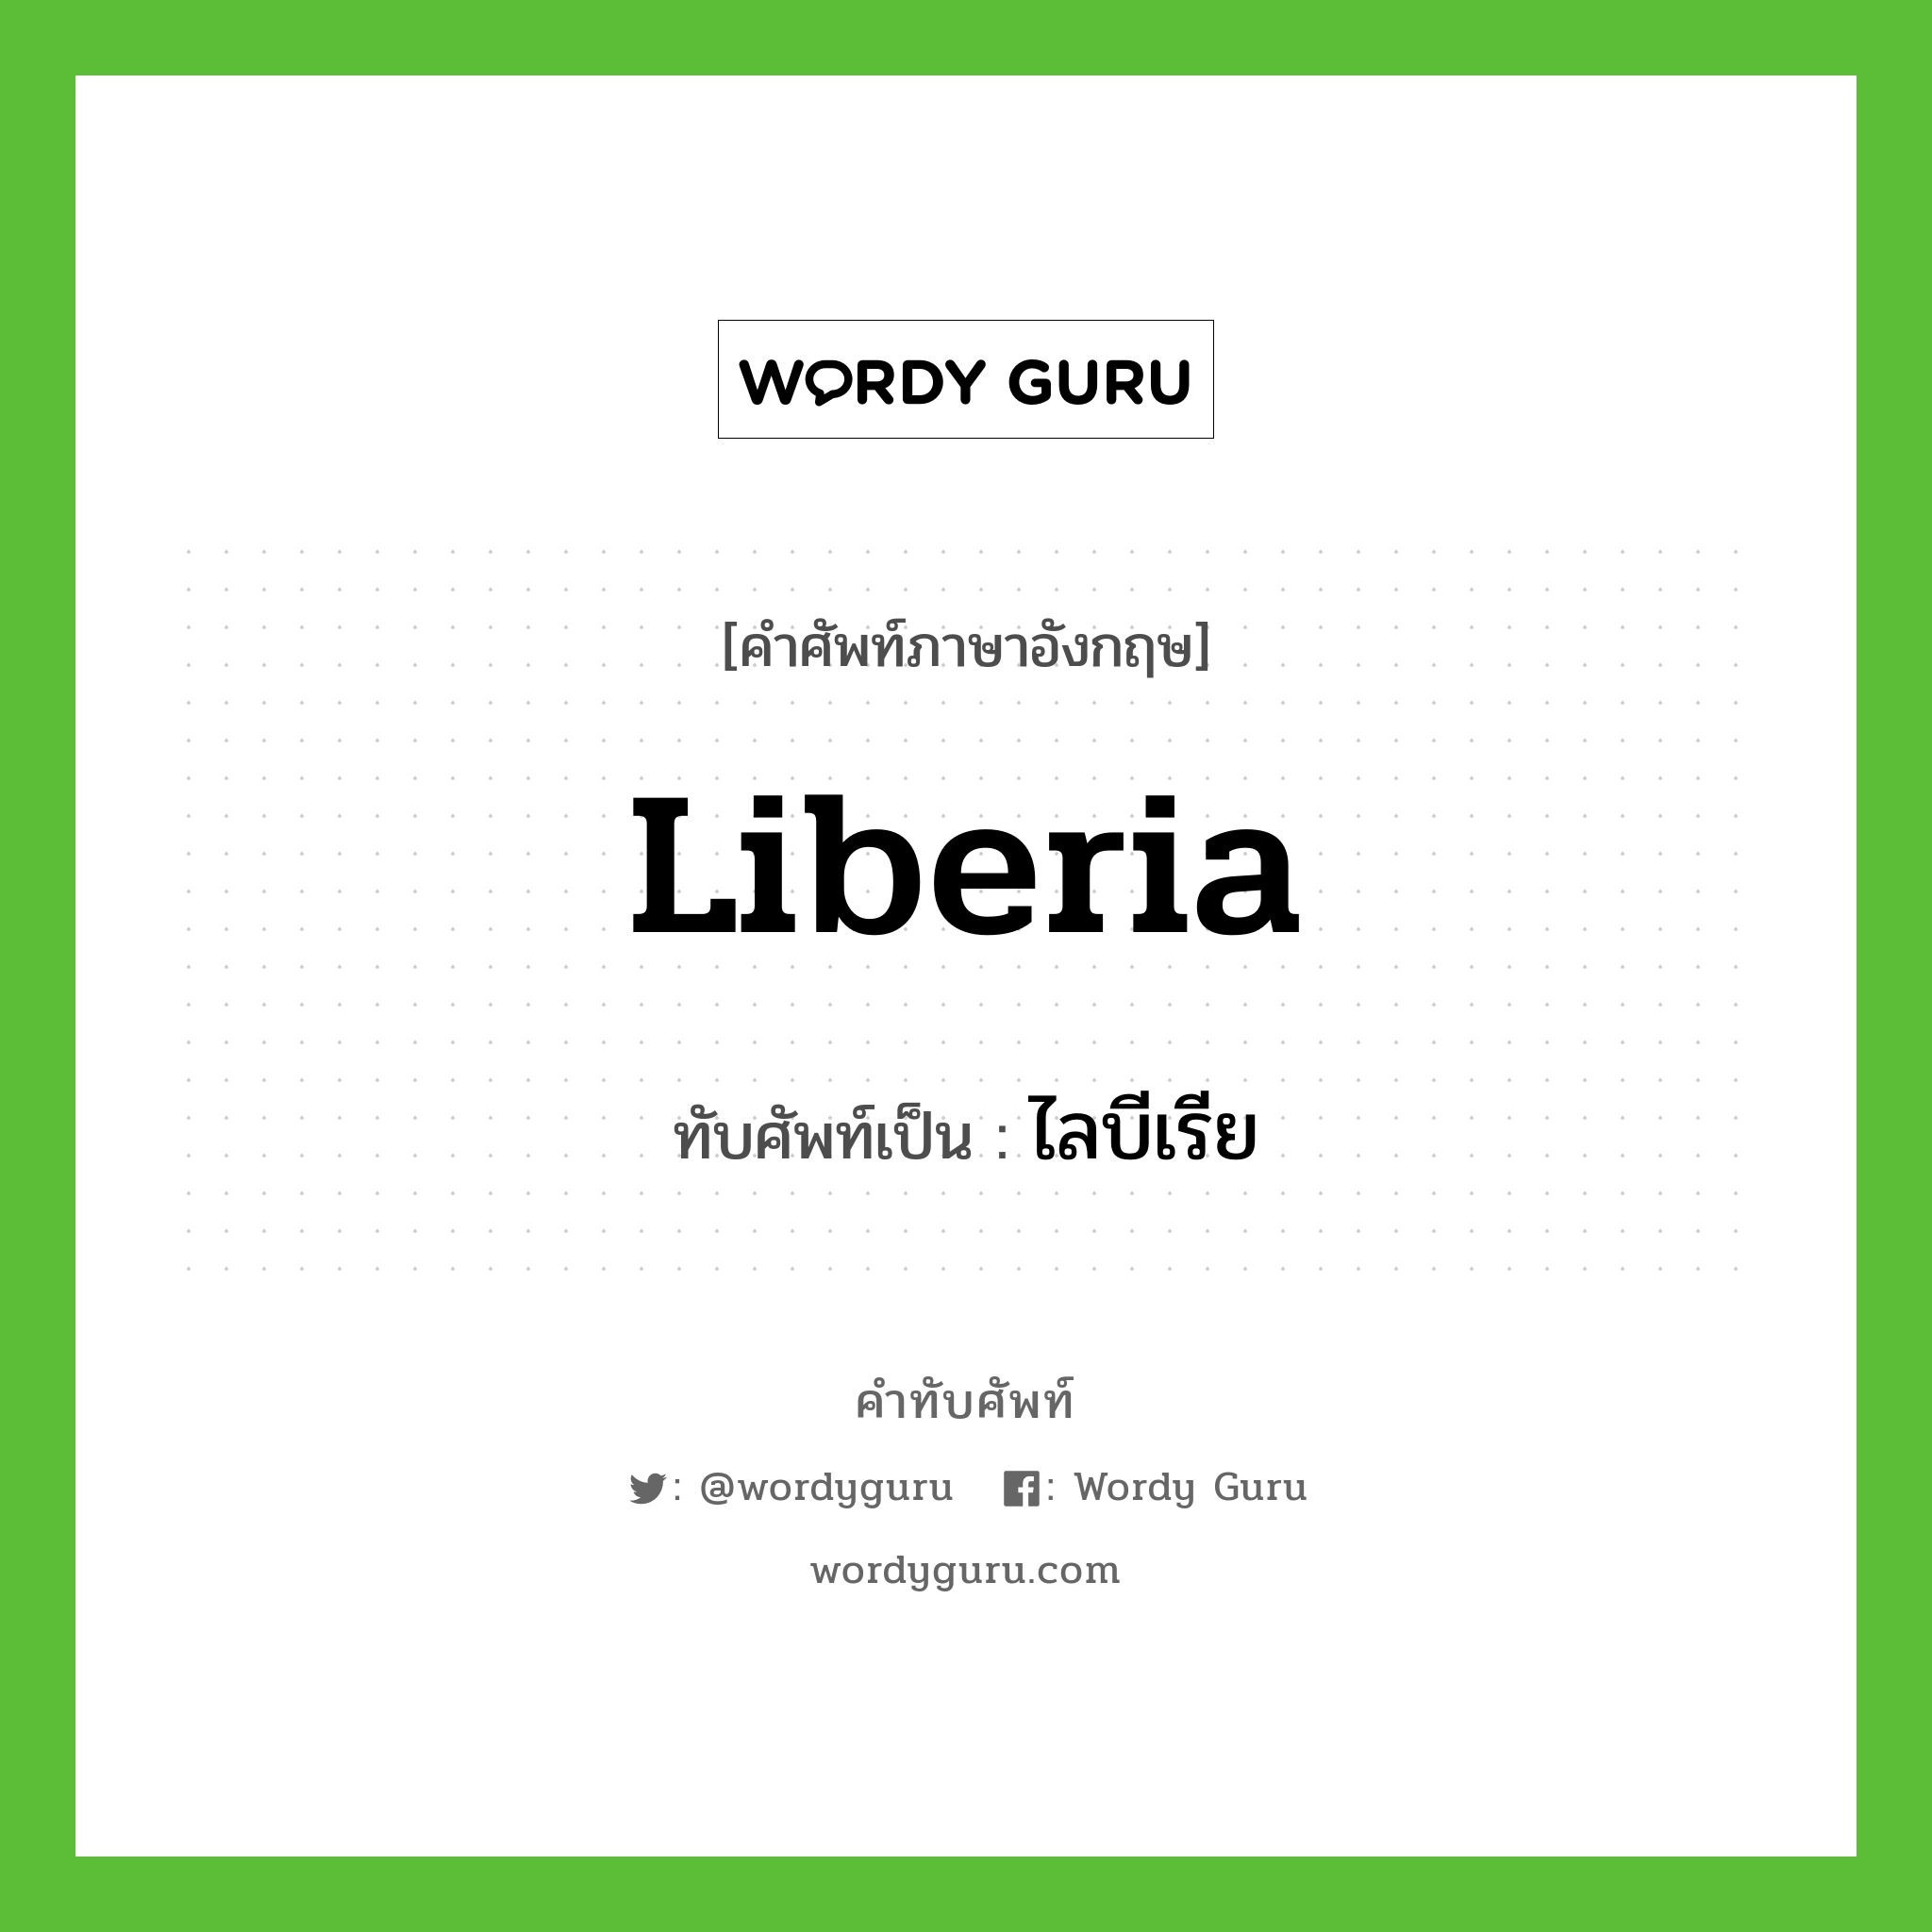 Liberia เขียนเป็นคำไทยว่าอะไร?, คำศัพท์ภาษาอังกฤษ Liberia ทับศัพท์เป็น ไลบีเรีย